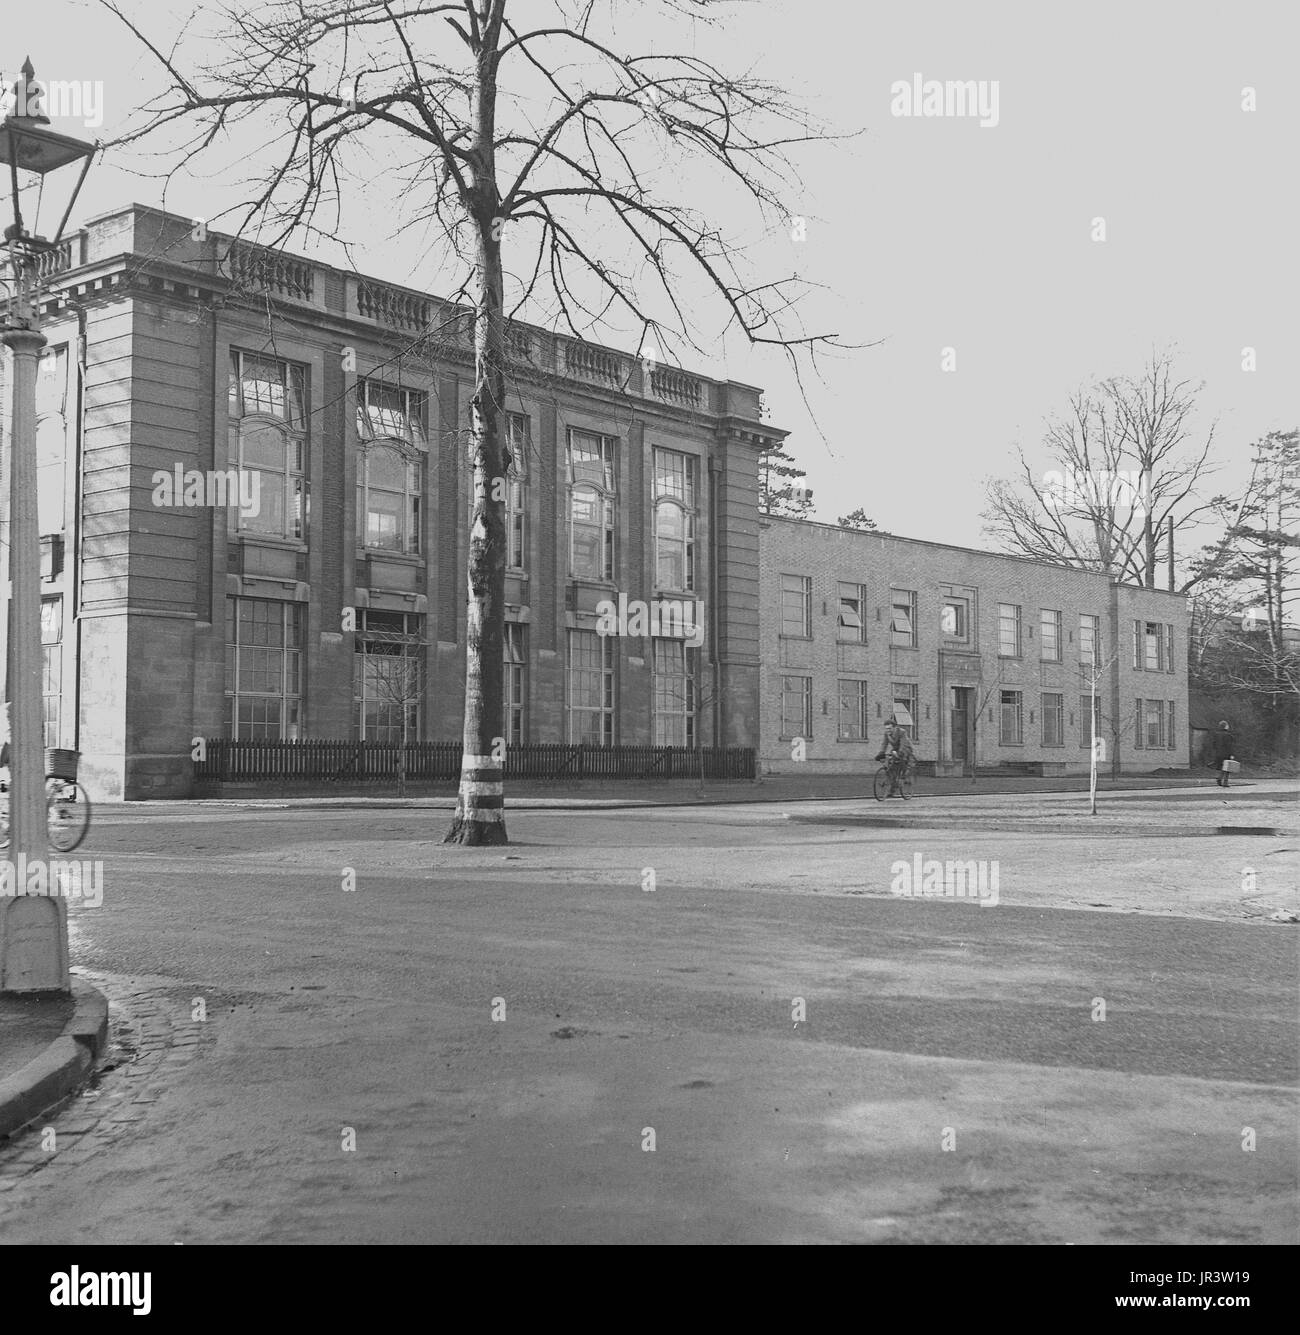 1948, historique, vue extérieure du bâtiment en Afrique du Parcs Rd, Oxford, le logement le Dyson Perrins laboratory, qui était le principal centre de recherche en chimie organique à la célèbre Université d'Oxford, Oxford, Angleterre, Royaume-Uni. Banque D'Images